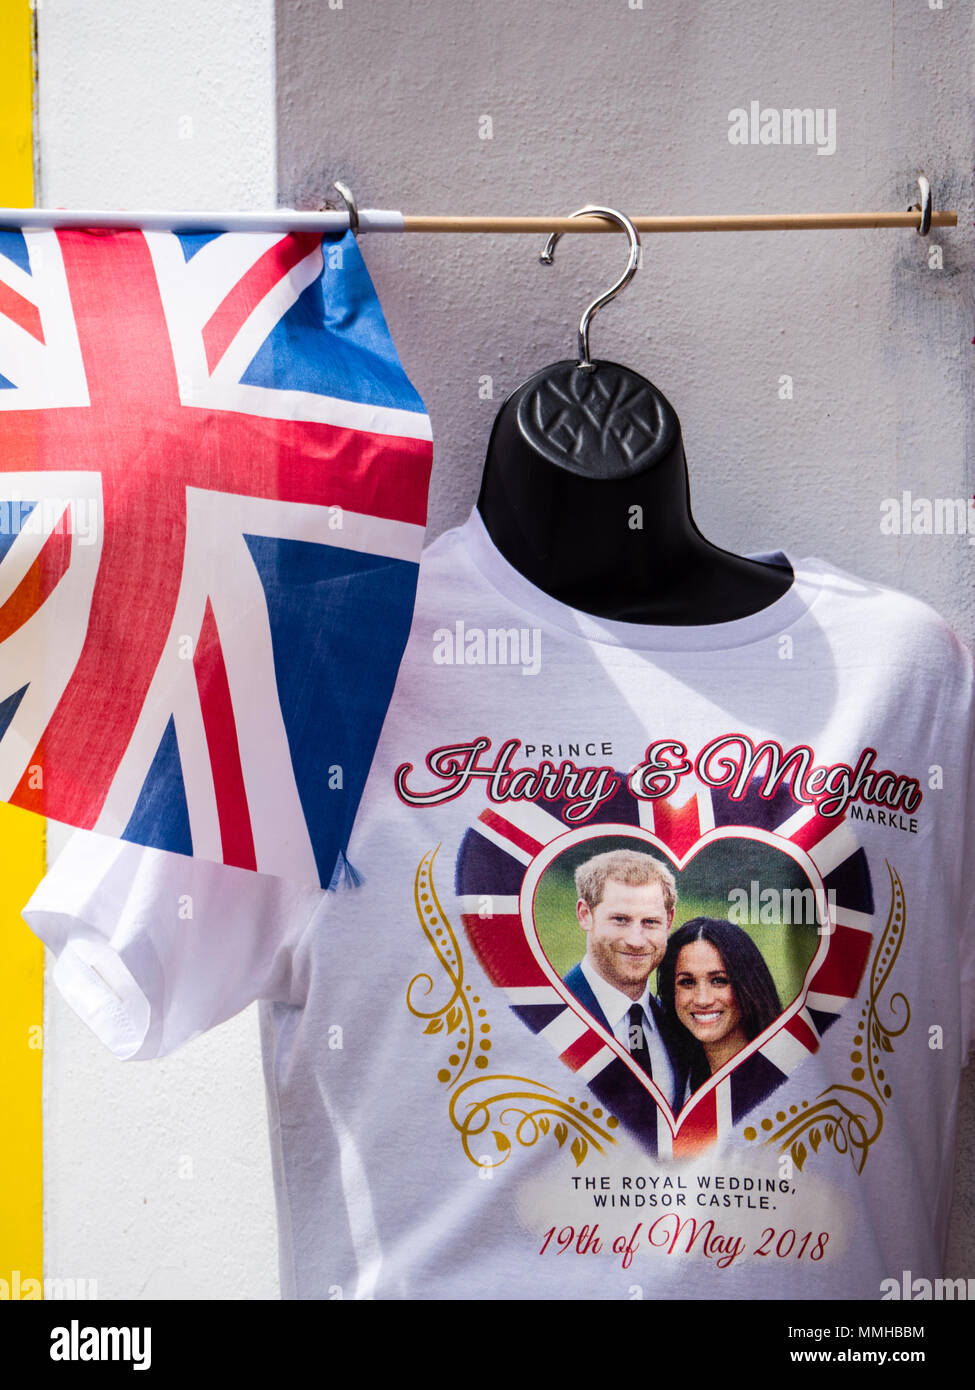 Harry und Meghan im Shop Anzeige, königliche Hochzeit 2018, Windsor, Berkshire, England, UK, GB. Stockfoto